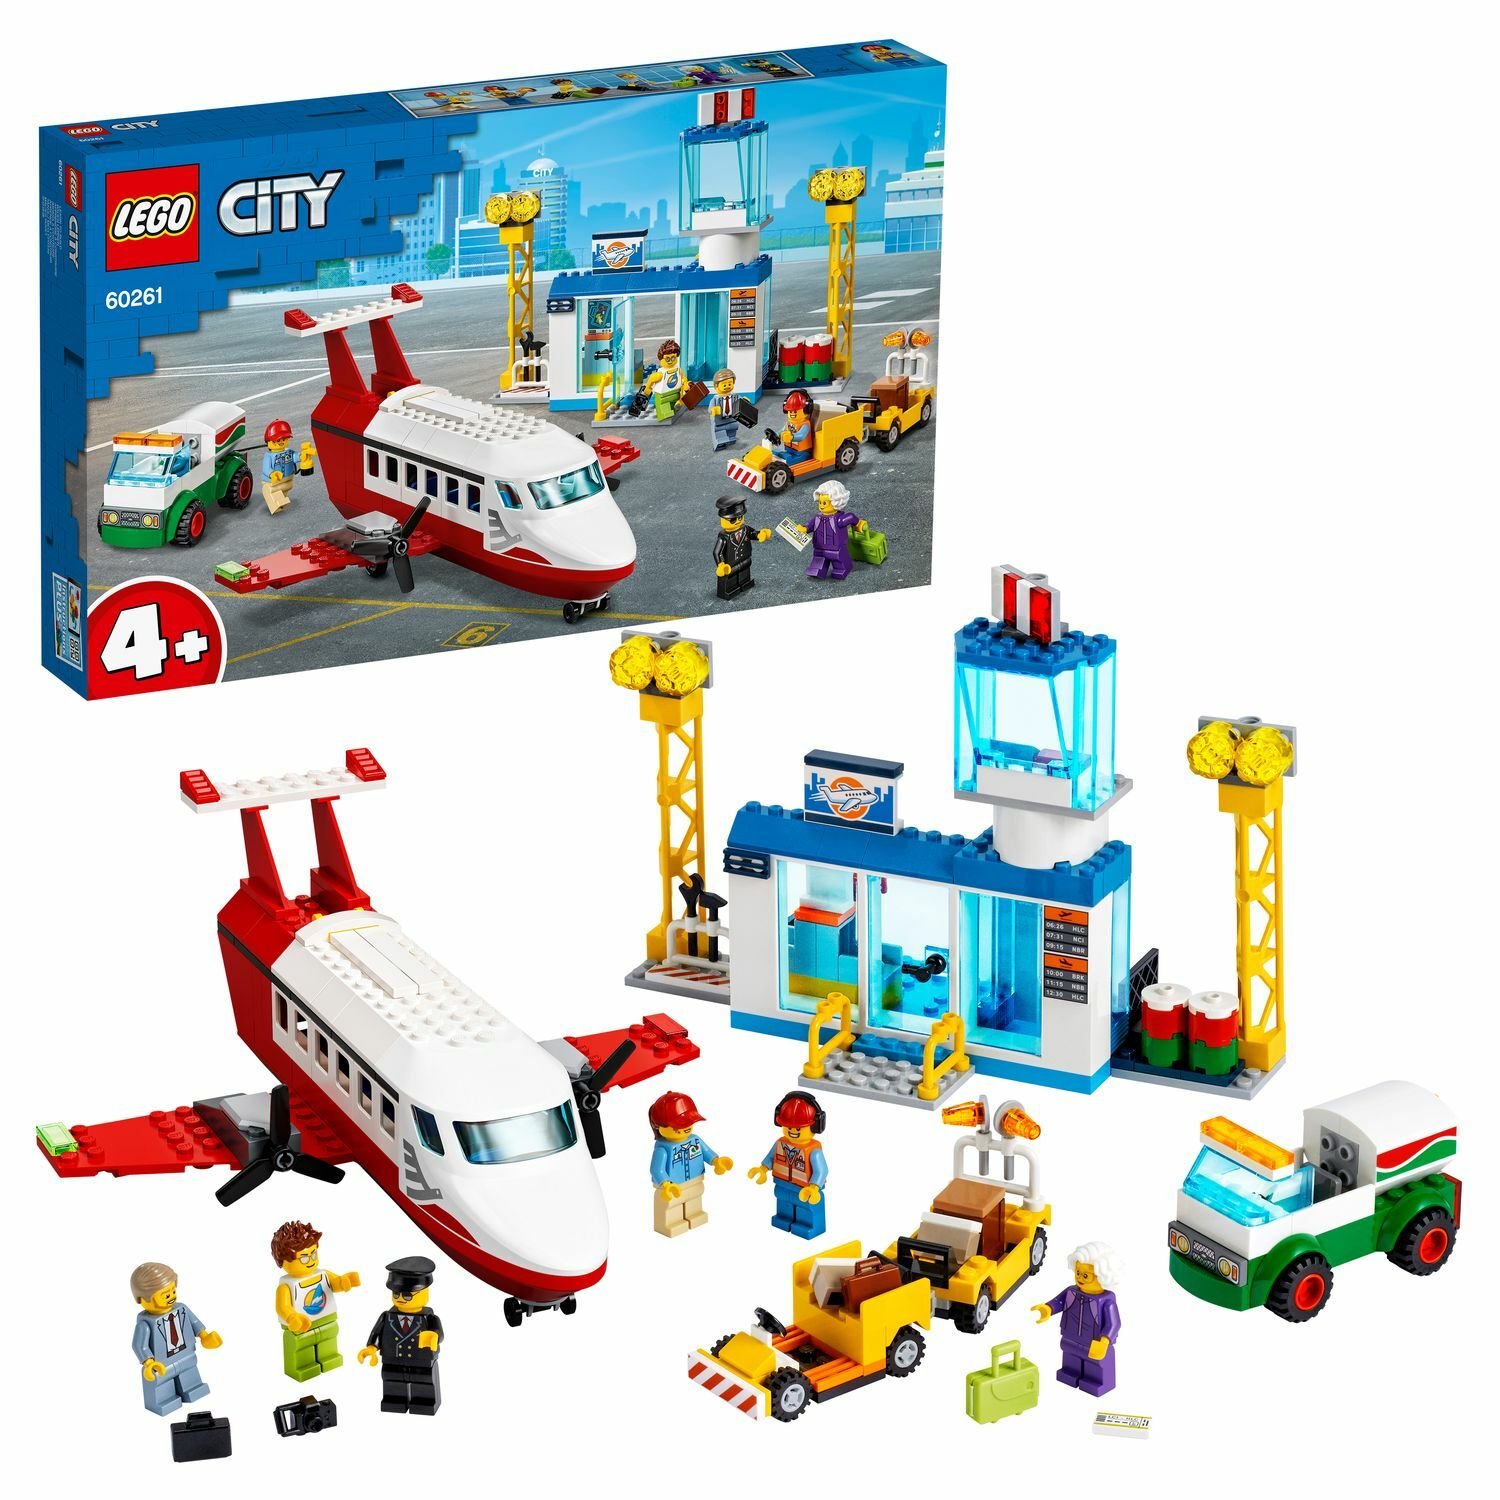 LEGO City 60261 Airport Городской аэропорт - Тамбов 